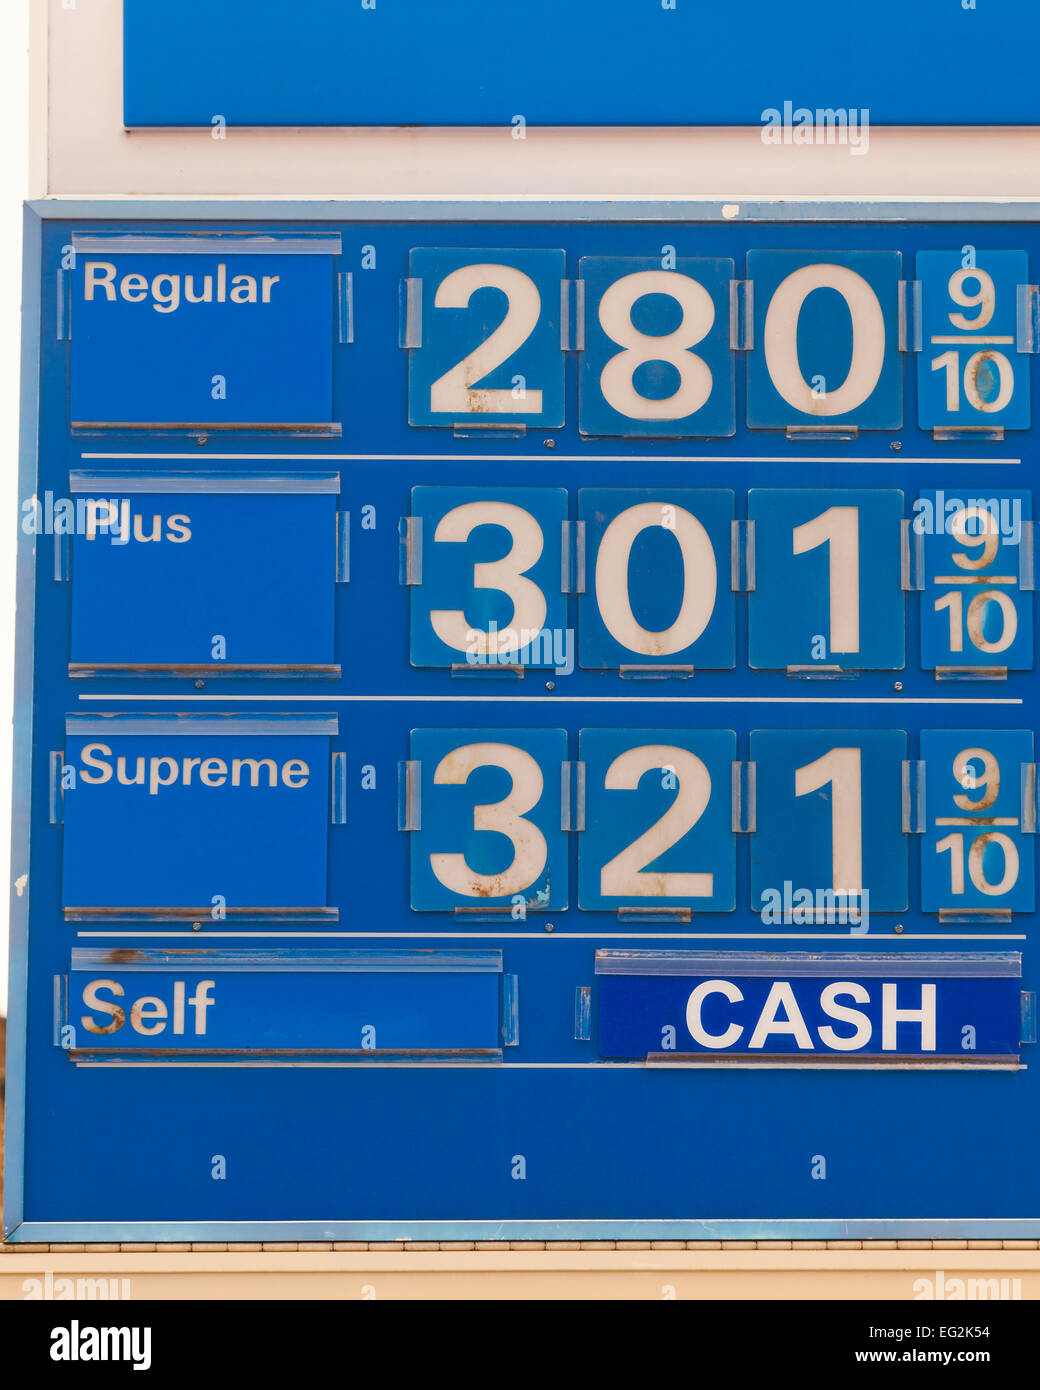 Exxon gasolinera precio sign - EE.UU. Foto de stock